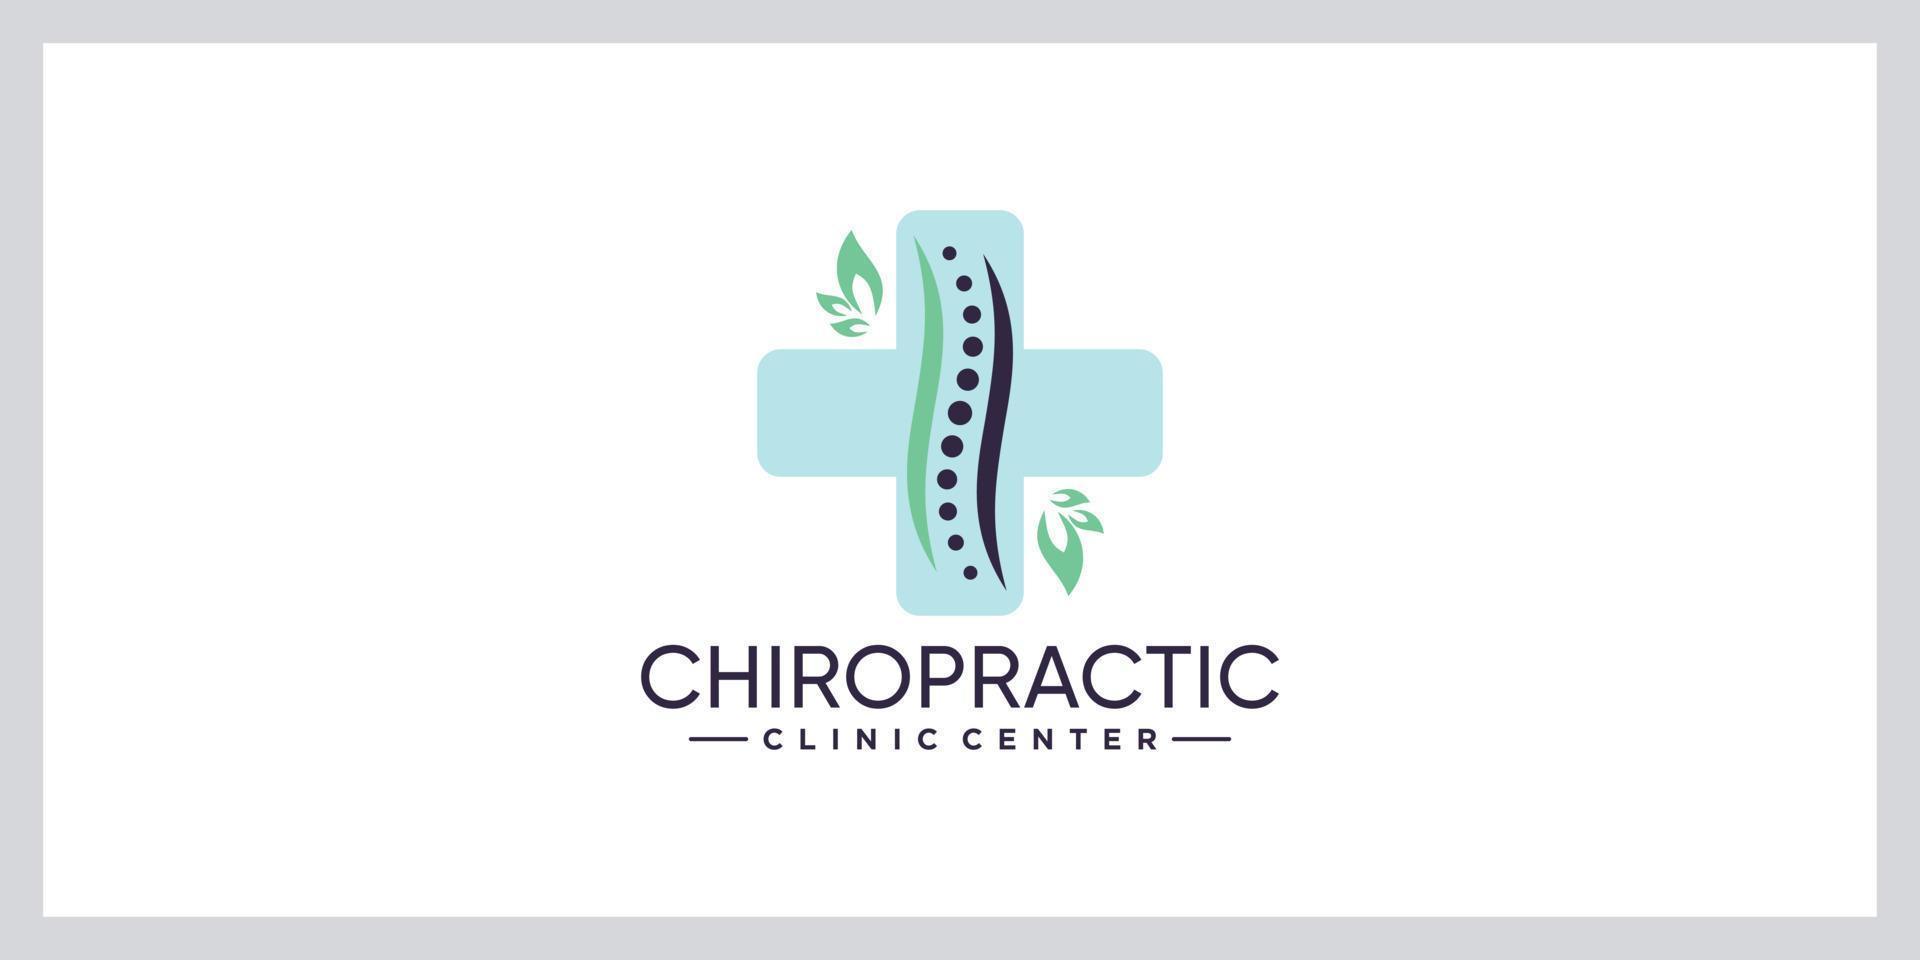 Chiropraktik-Klinik-Massage-Logo mit Blattelement und kreativem Konzept-Premium-Vektor vektor